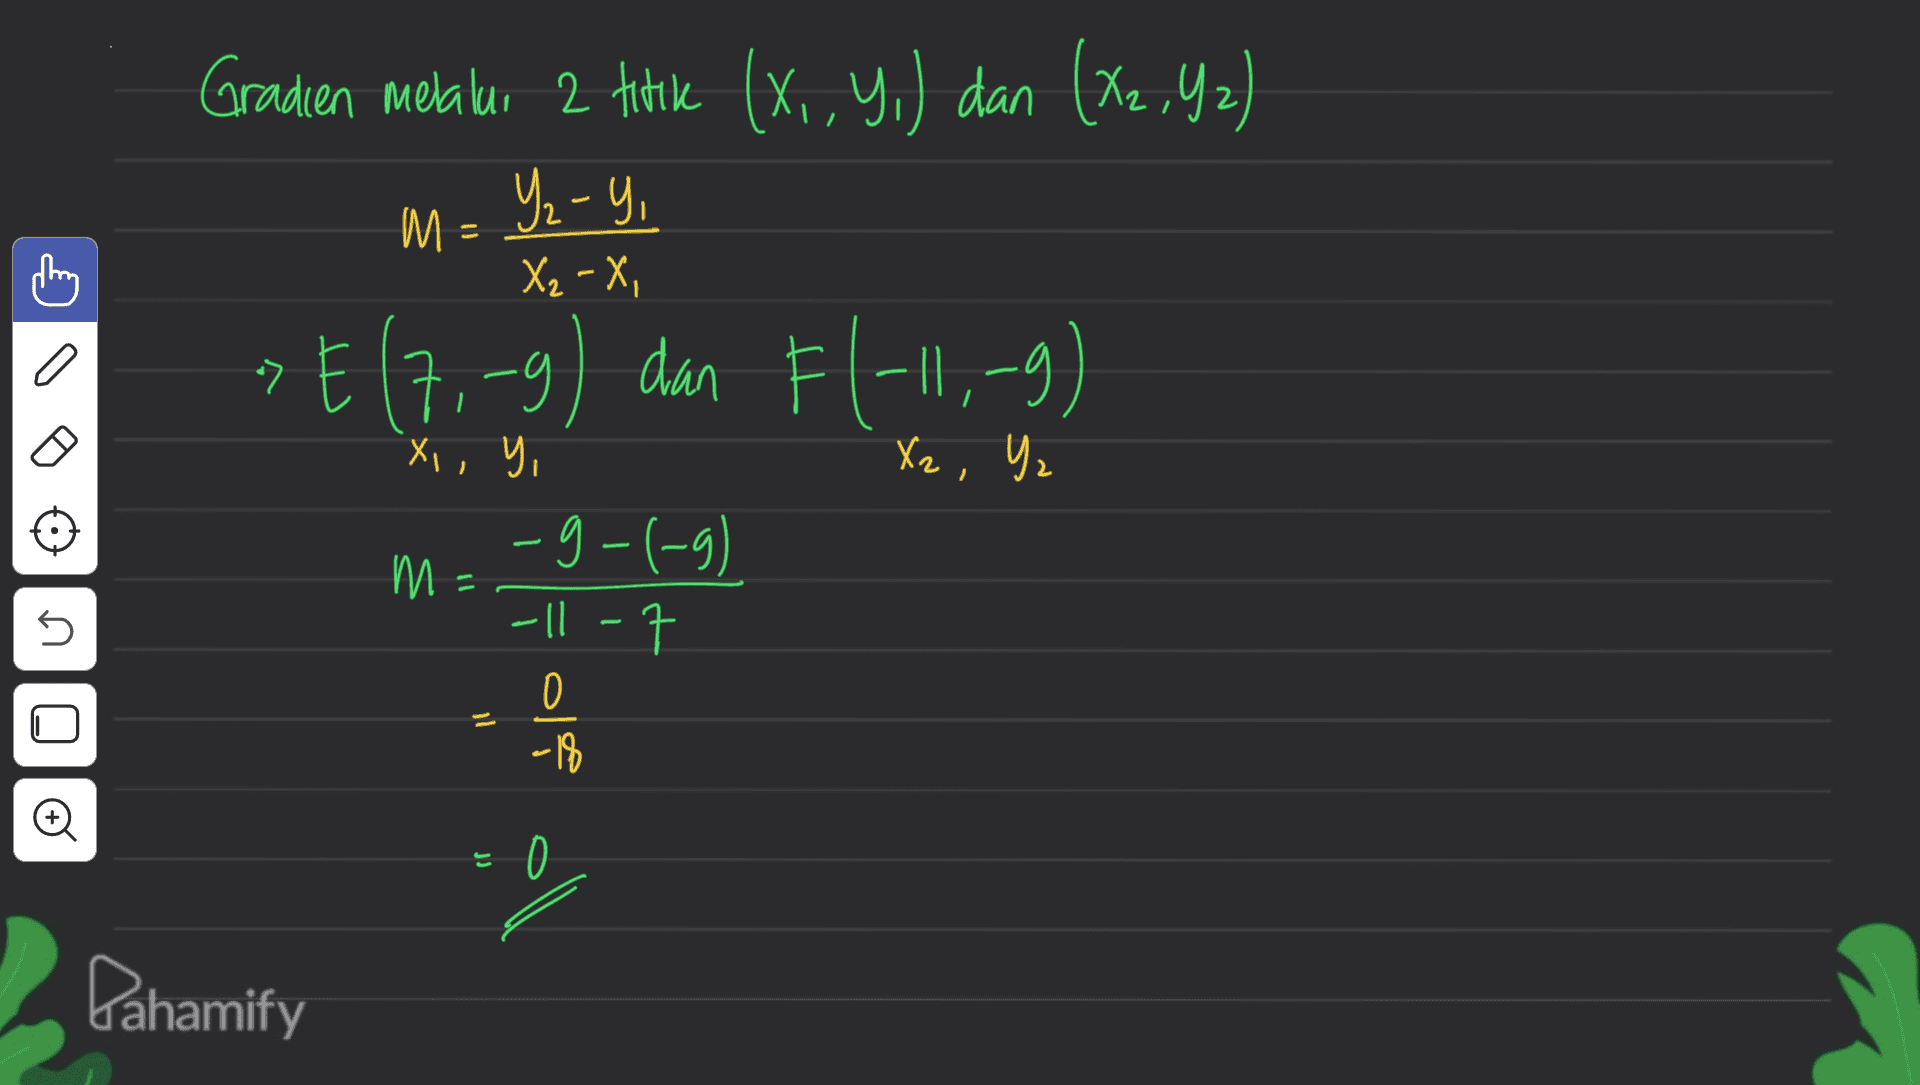 Gradien melalui 2 titik (X,Y,) dan (X2,42) 2 Y- - » E (7,-9) dan Fl-11,-9) 티 ) M - = X2 - X, C a Xz, Yz X, Y, -g-(-9) M - W 45 -11-7 ll O -18 © JJ Pahamify 